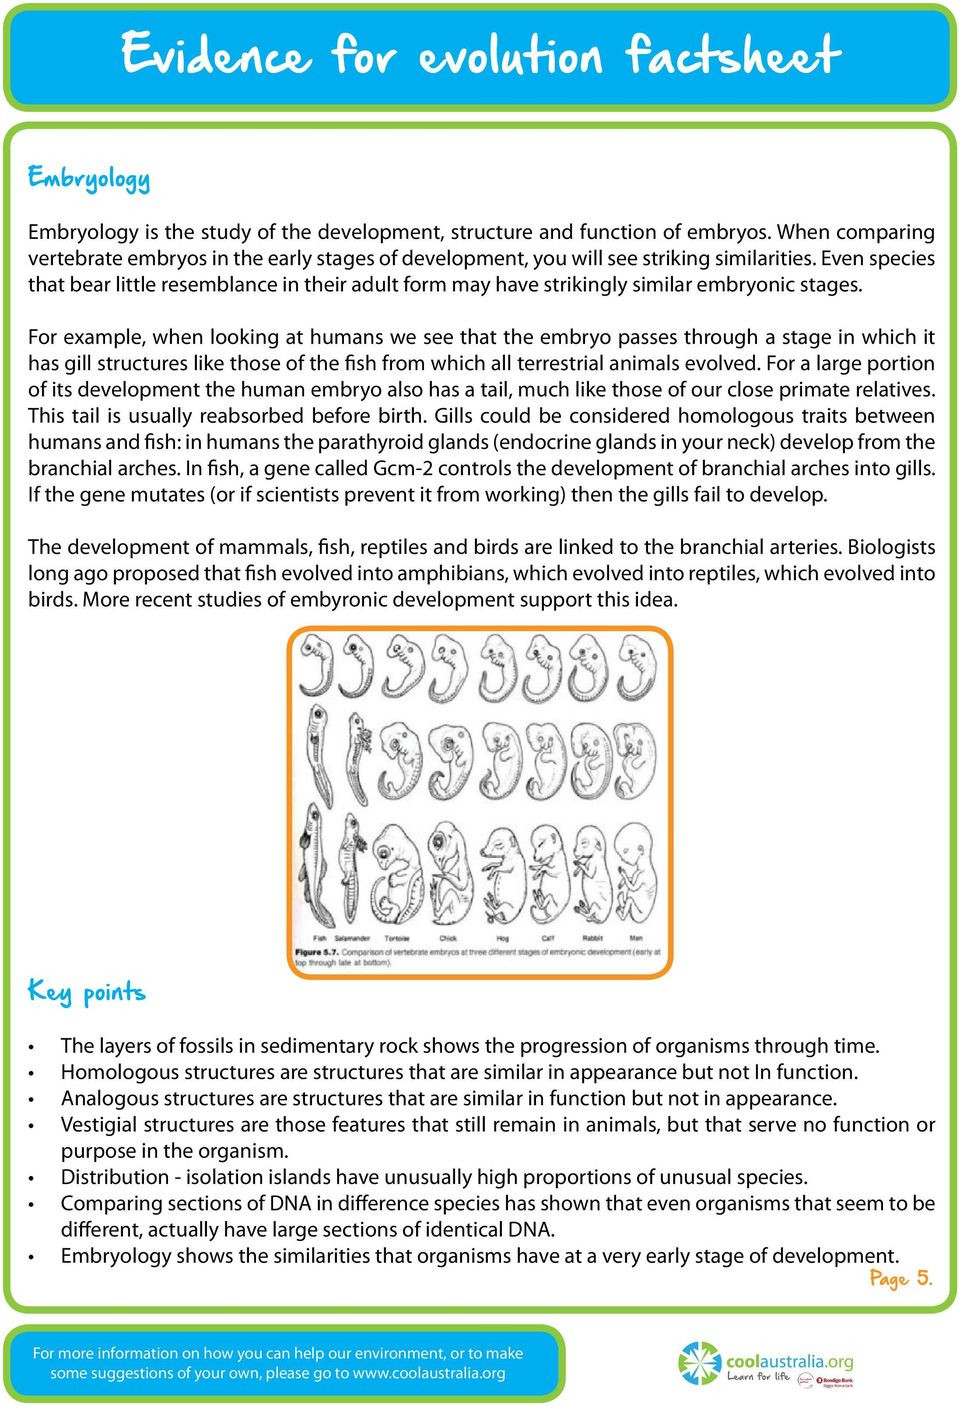 Evidence Of Evolution Worksheet Evidence for Evolution Factsheet Pdf Free Download